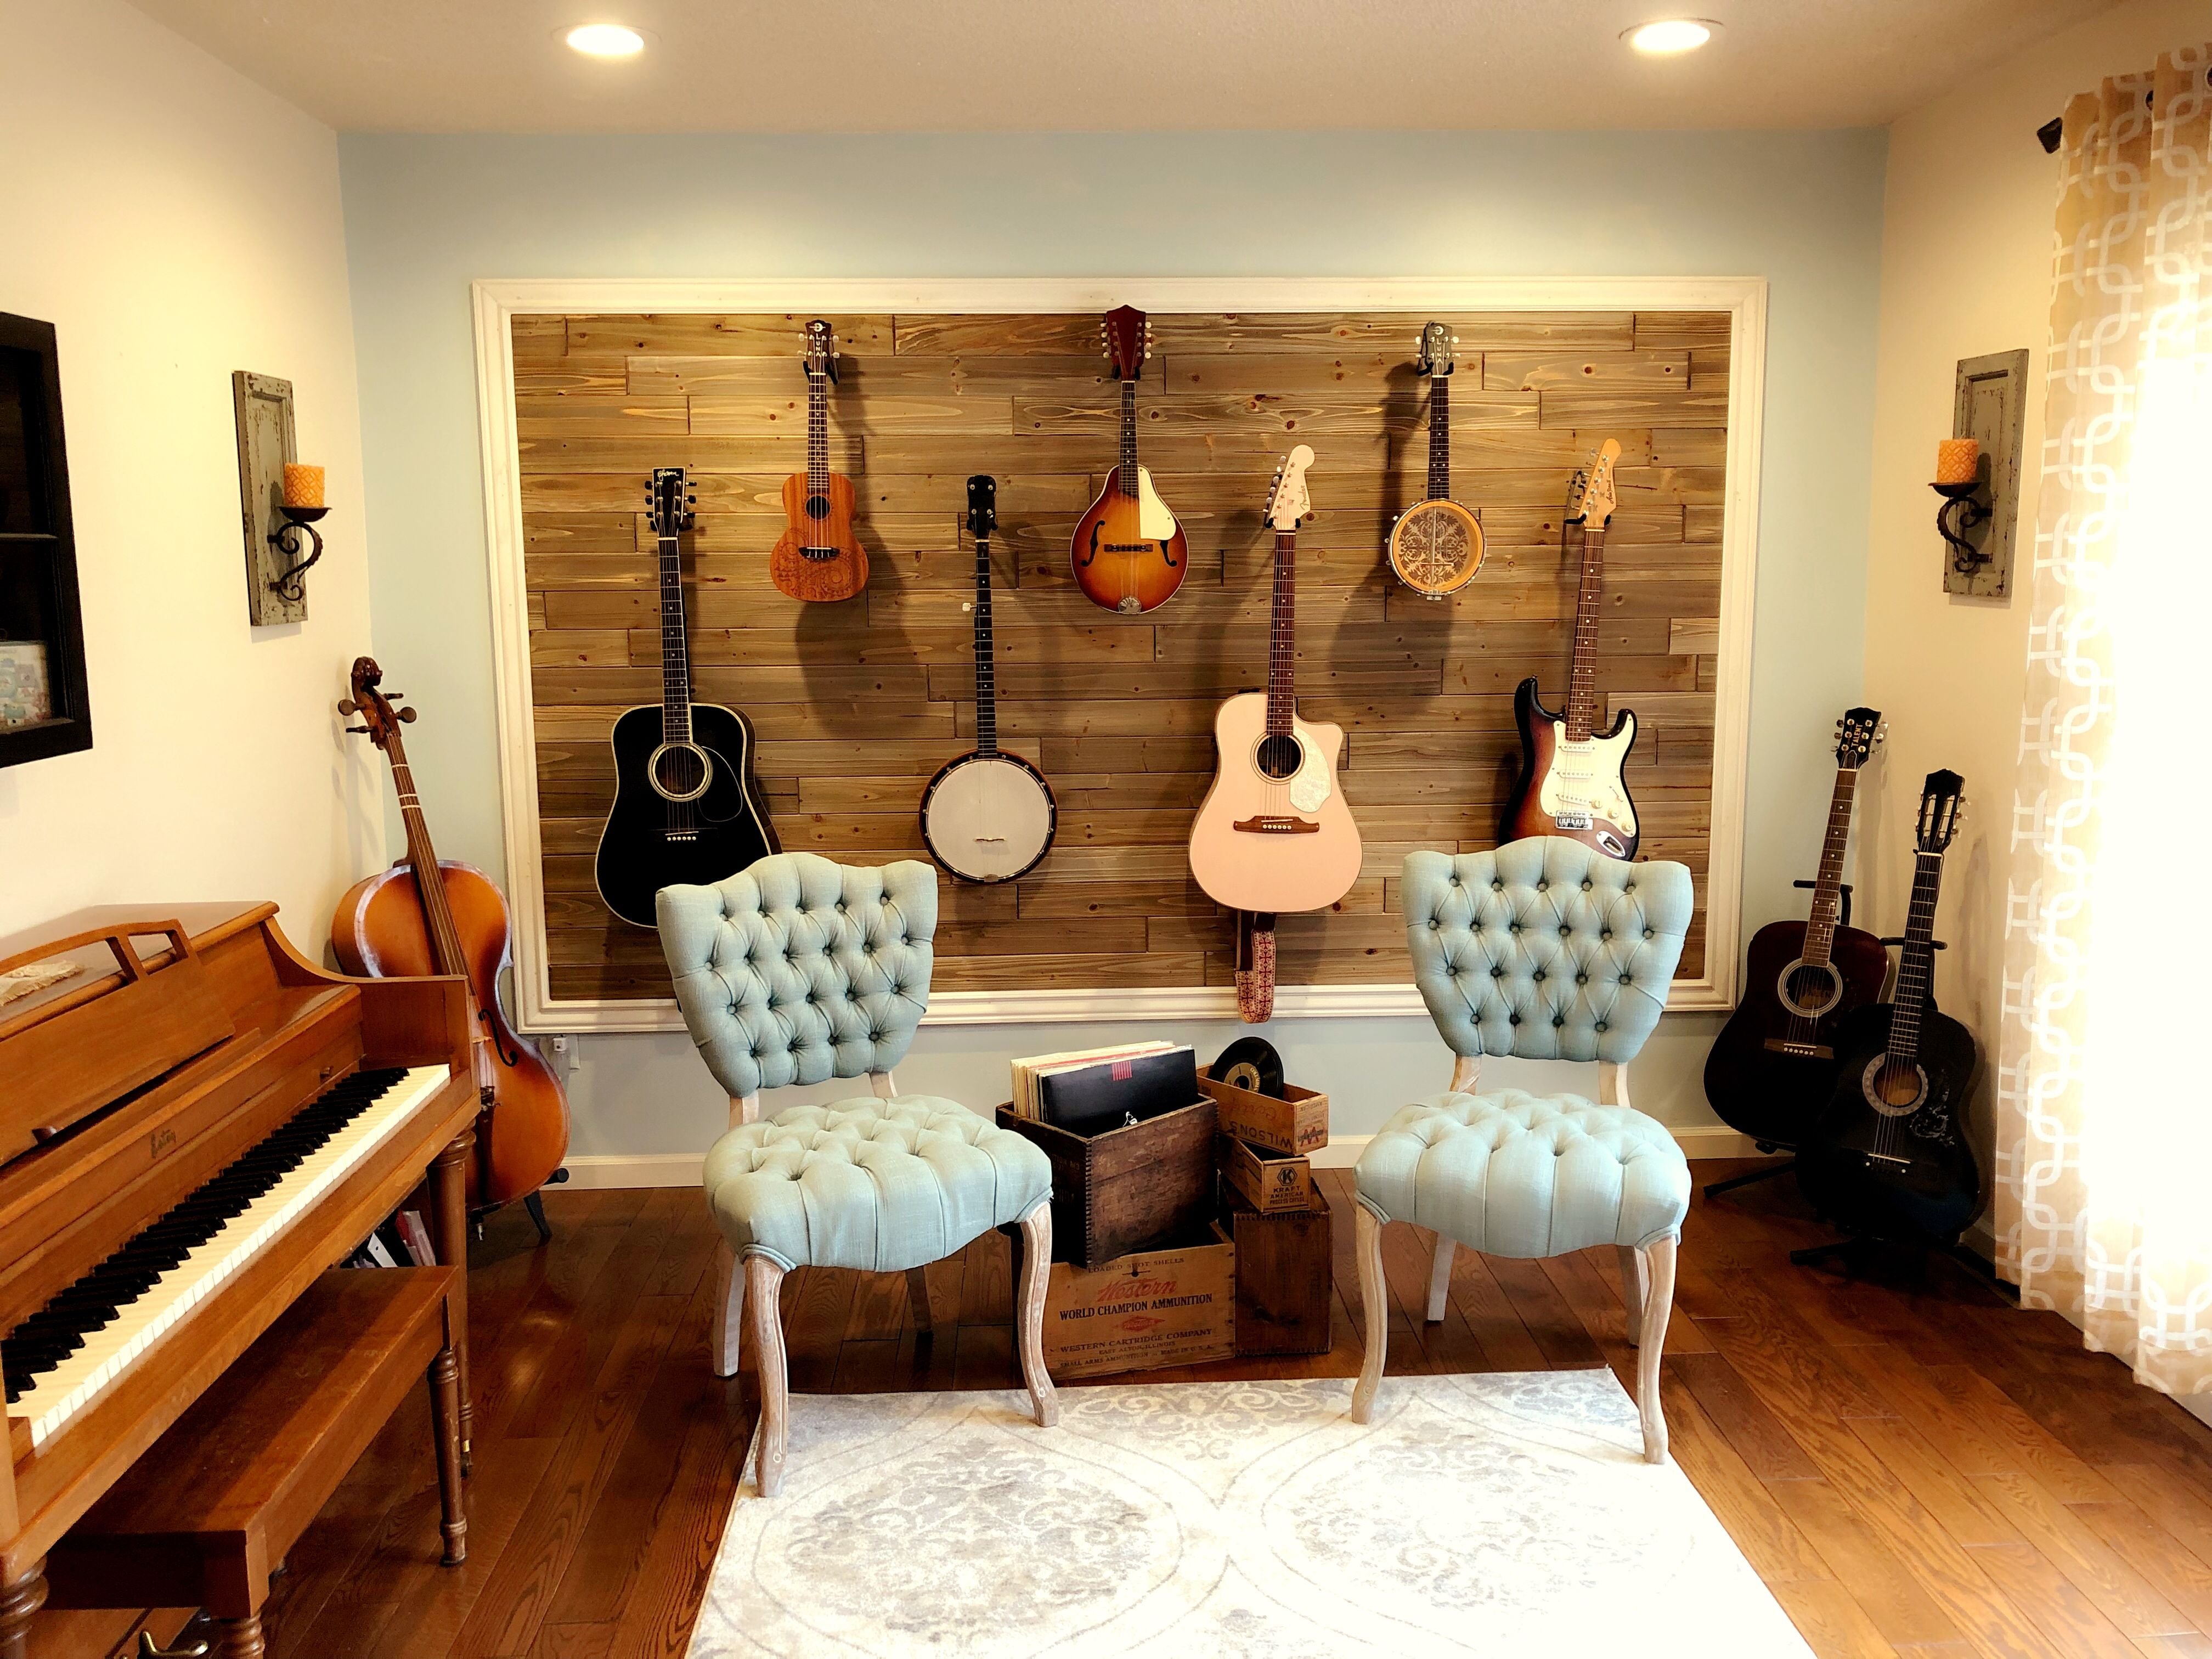 Bedroom music. Интерьер музыкальной комнаты. Музыкальные инструменты в интерьере. Гитара в интерьере. Гитара на стене в интерьере.